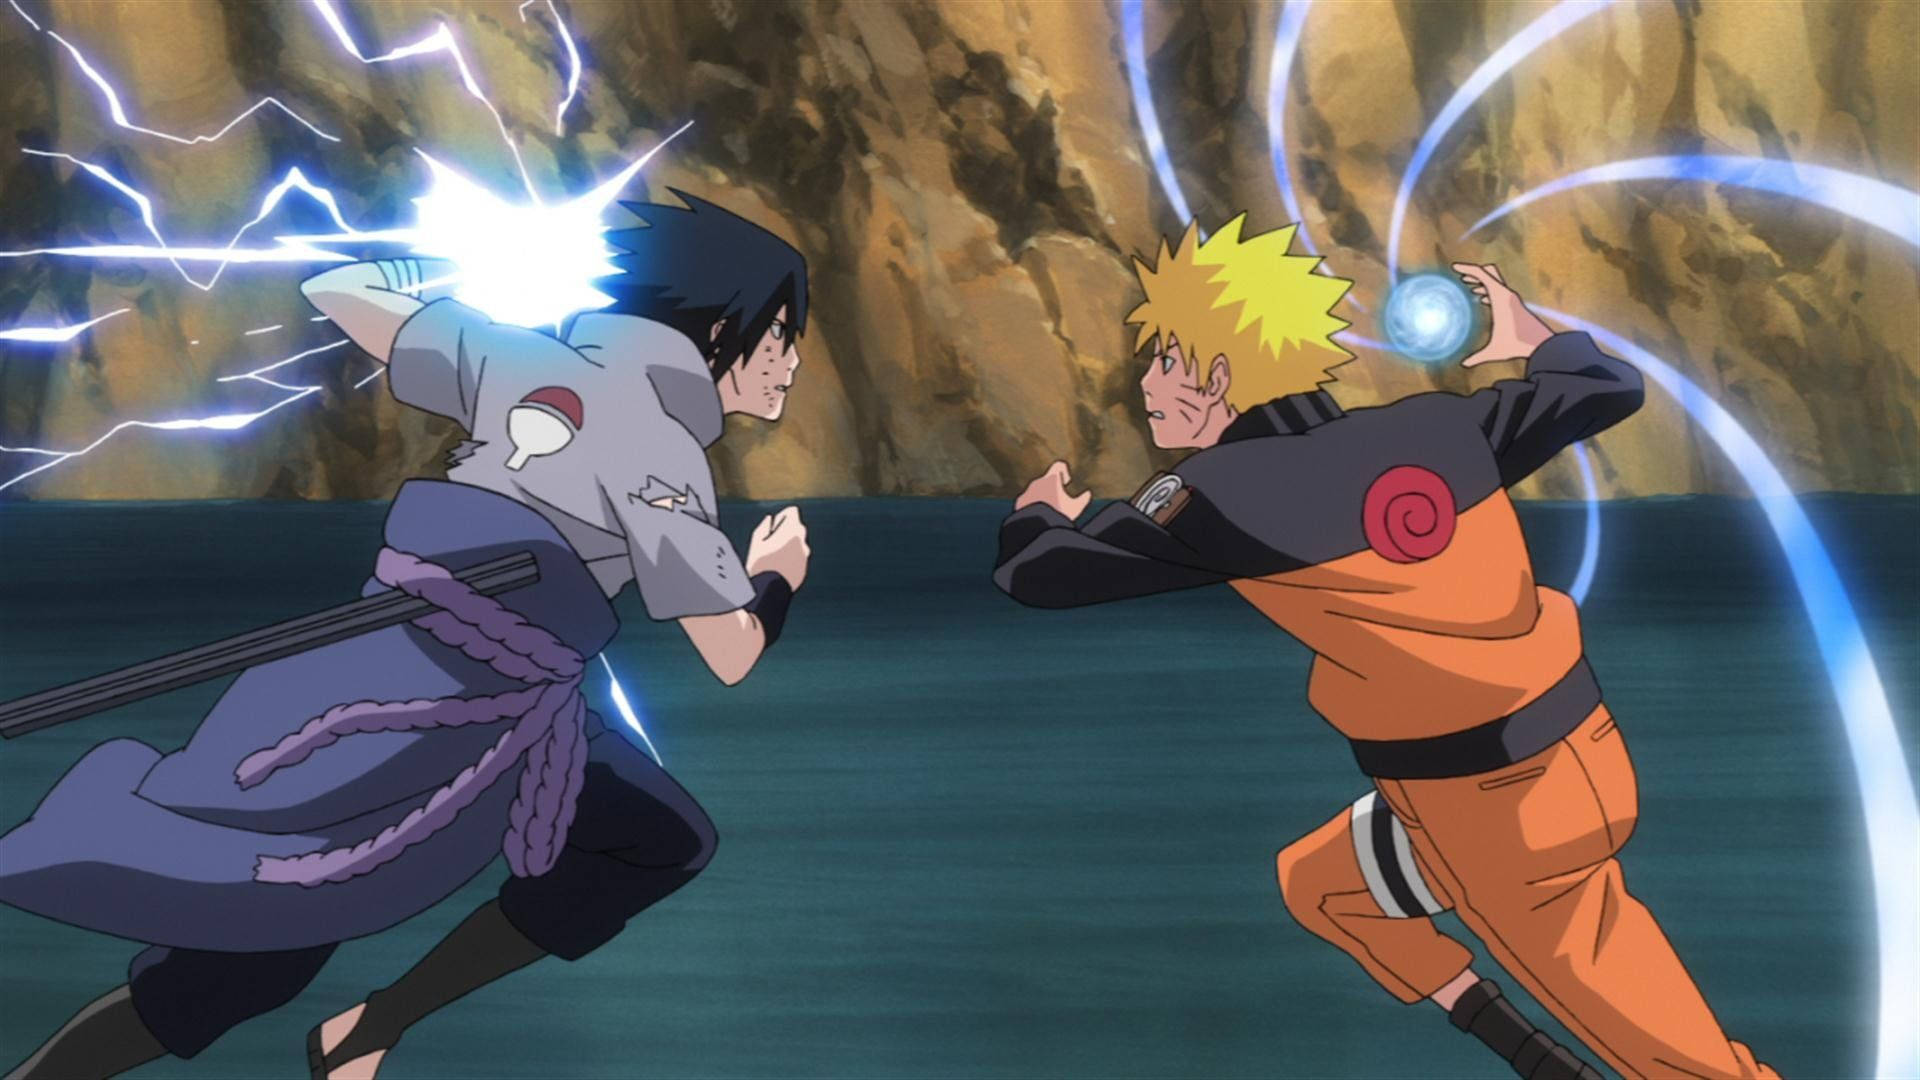 Chidori Naruto And Sasuke Duel Background